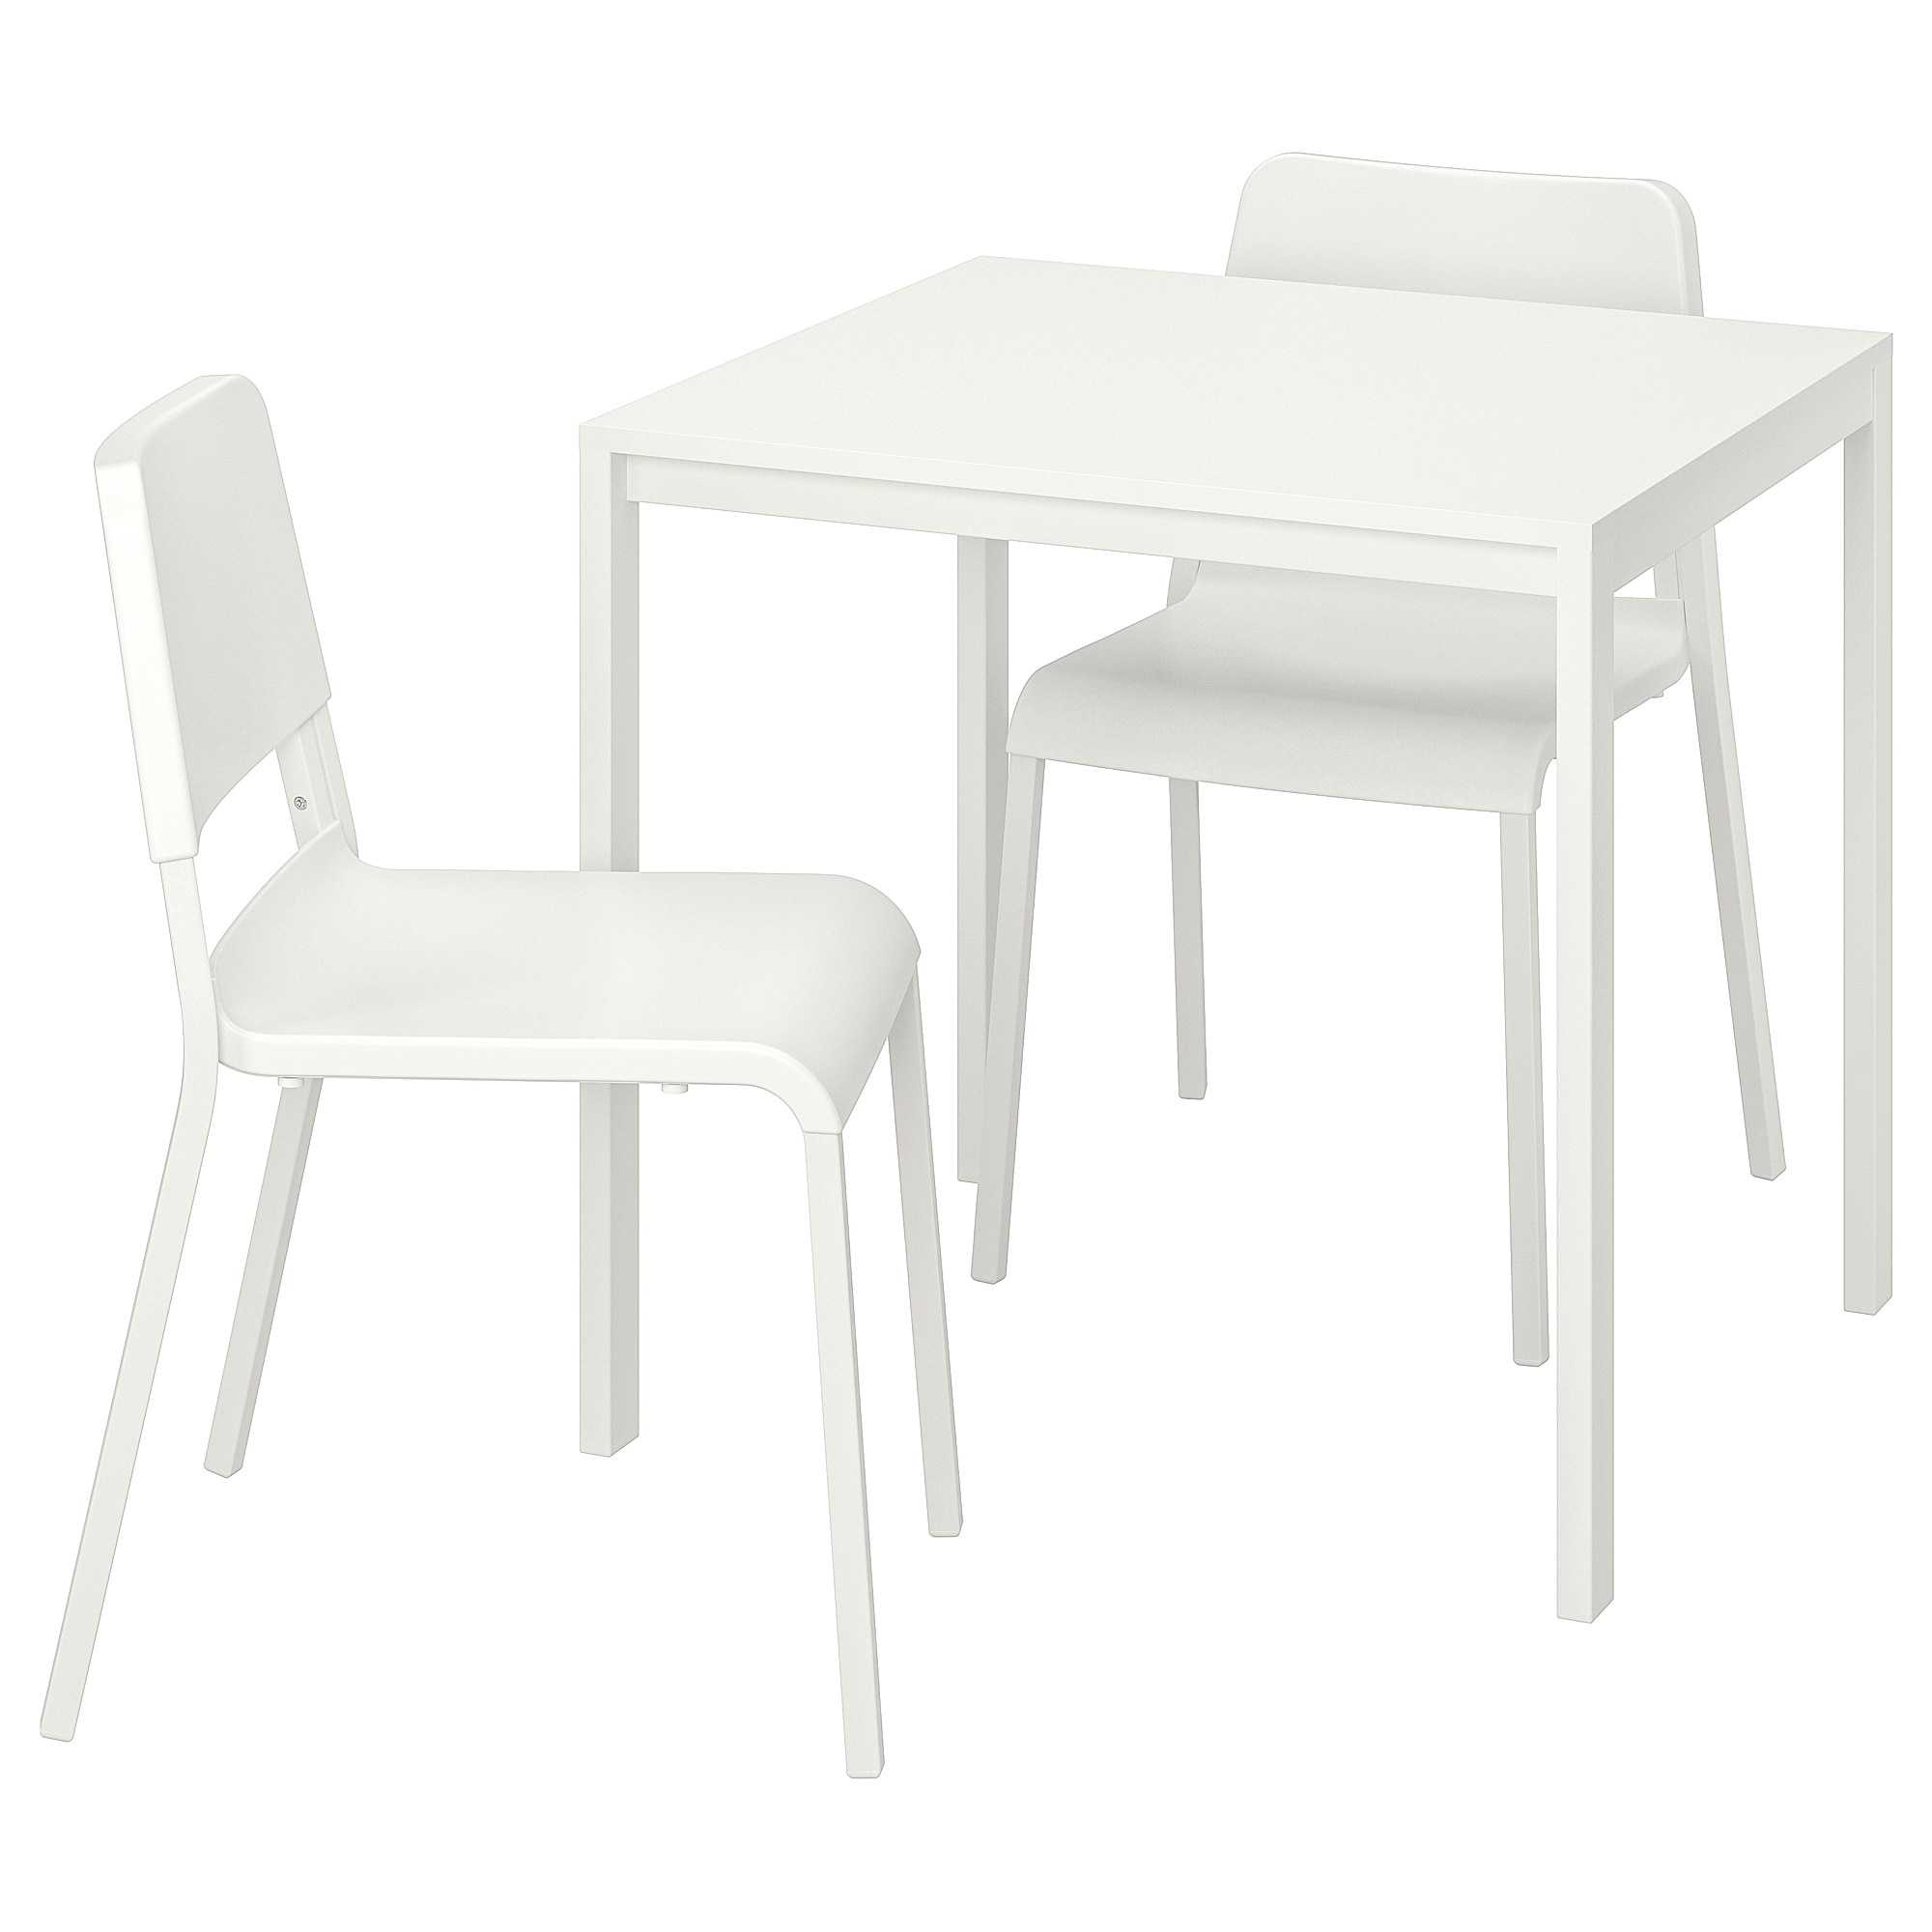 MELLTORP / TEODORES - стол и 2 стула, белый, белый